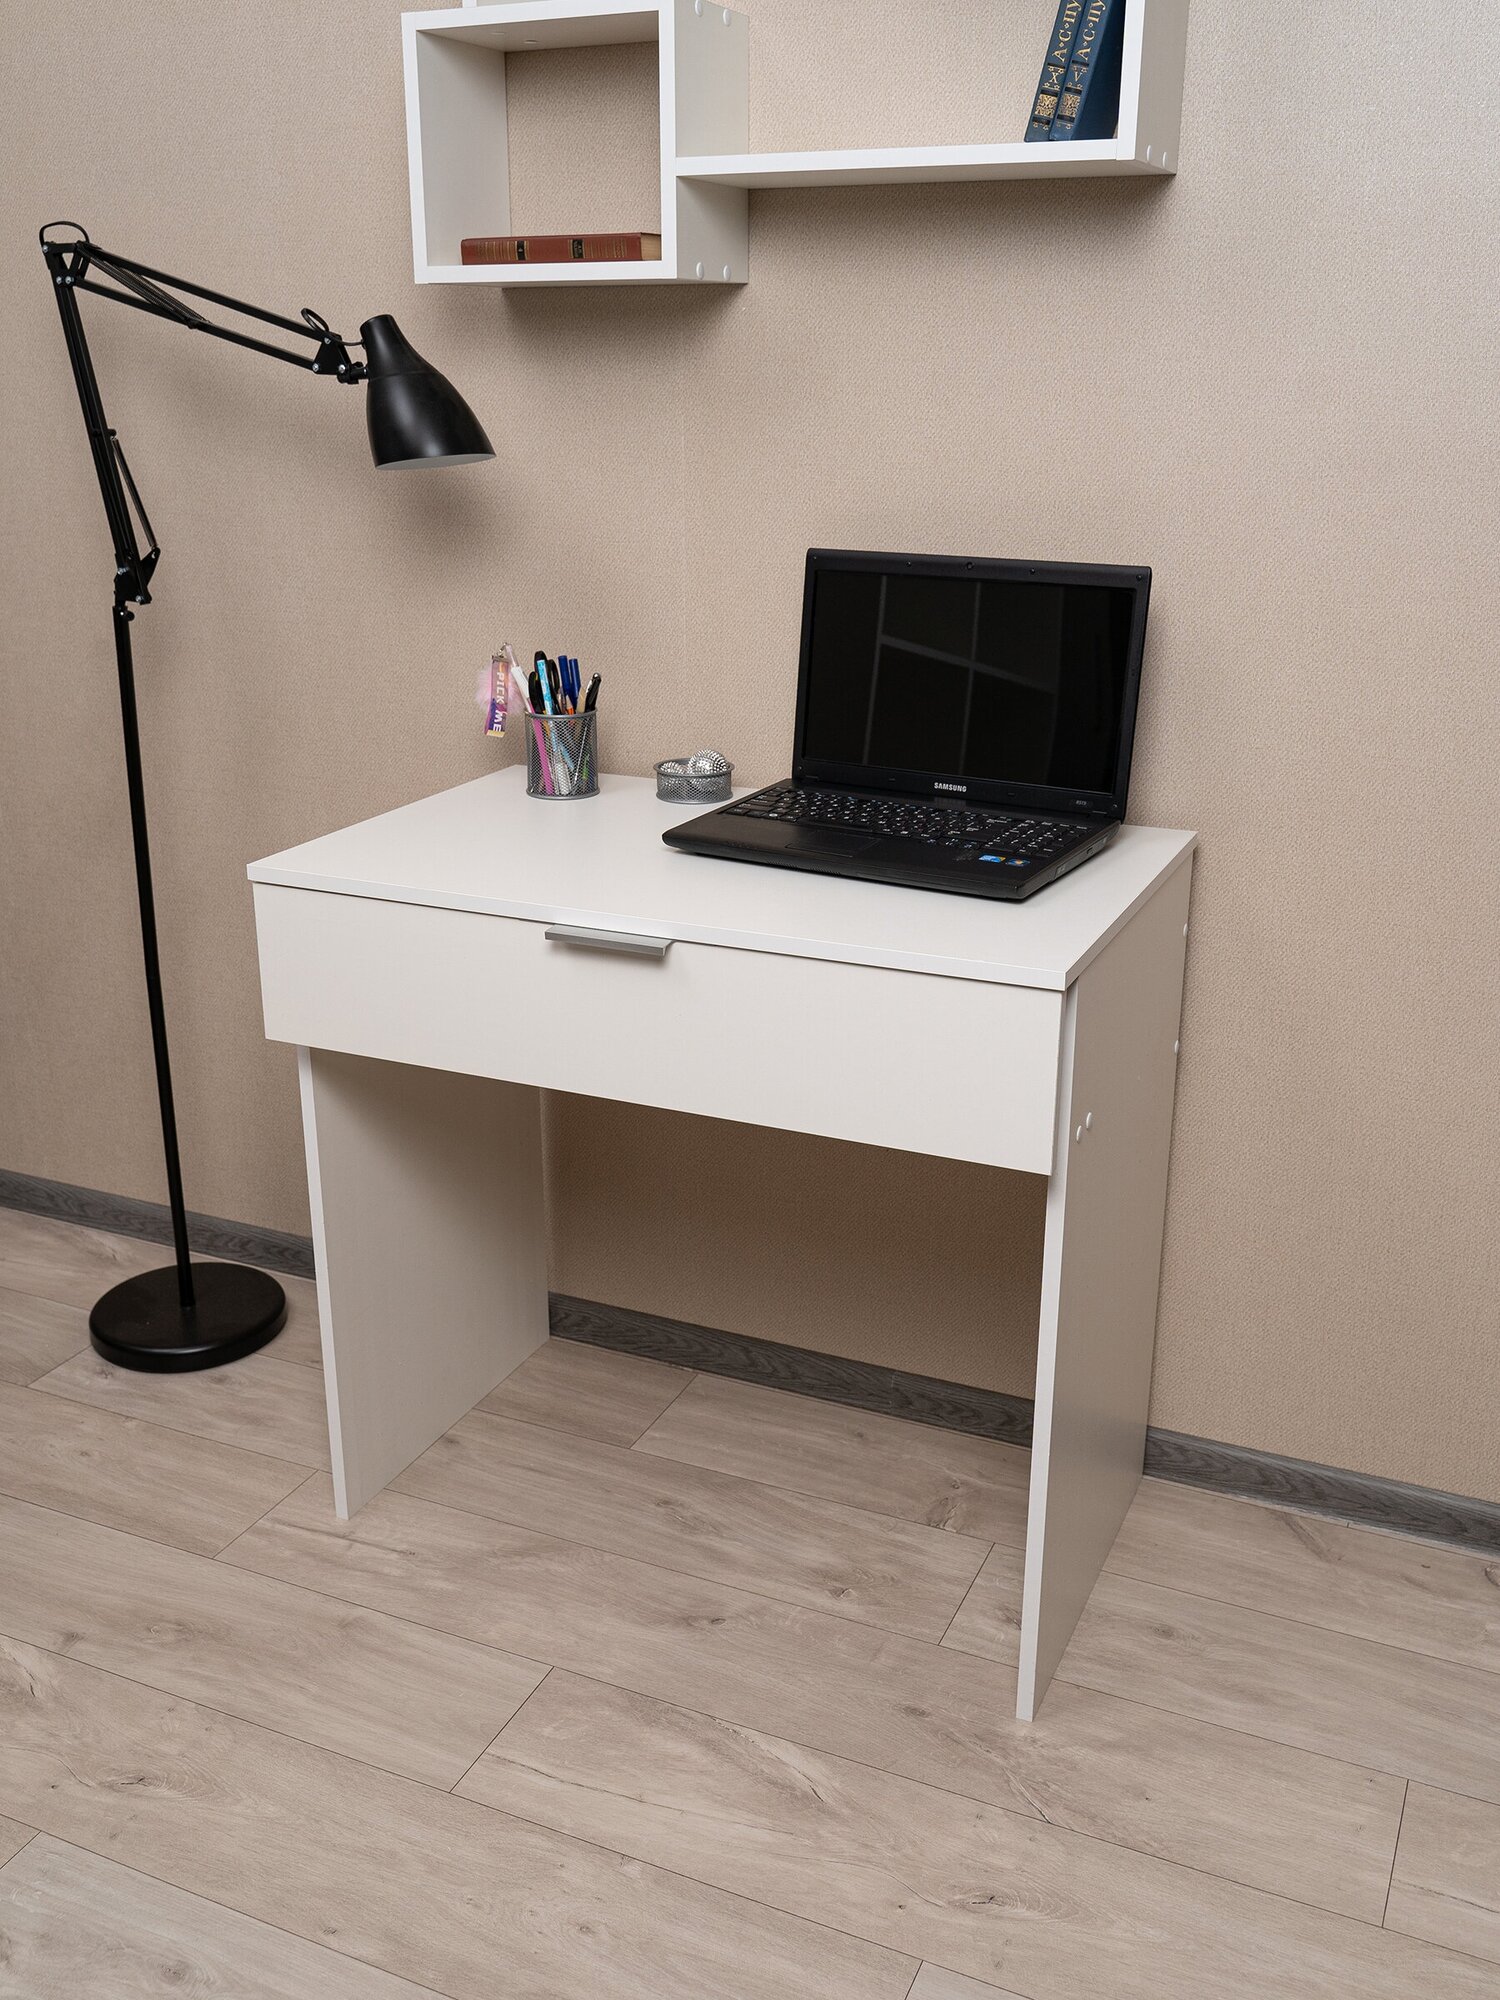 Стол письменный белый с ящиками для школьника, ноутбука, маникюра деревянный / столик универсальный маникюрный детский туалетный лофт, Офис-Люкс Norm - фотография № 17